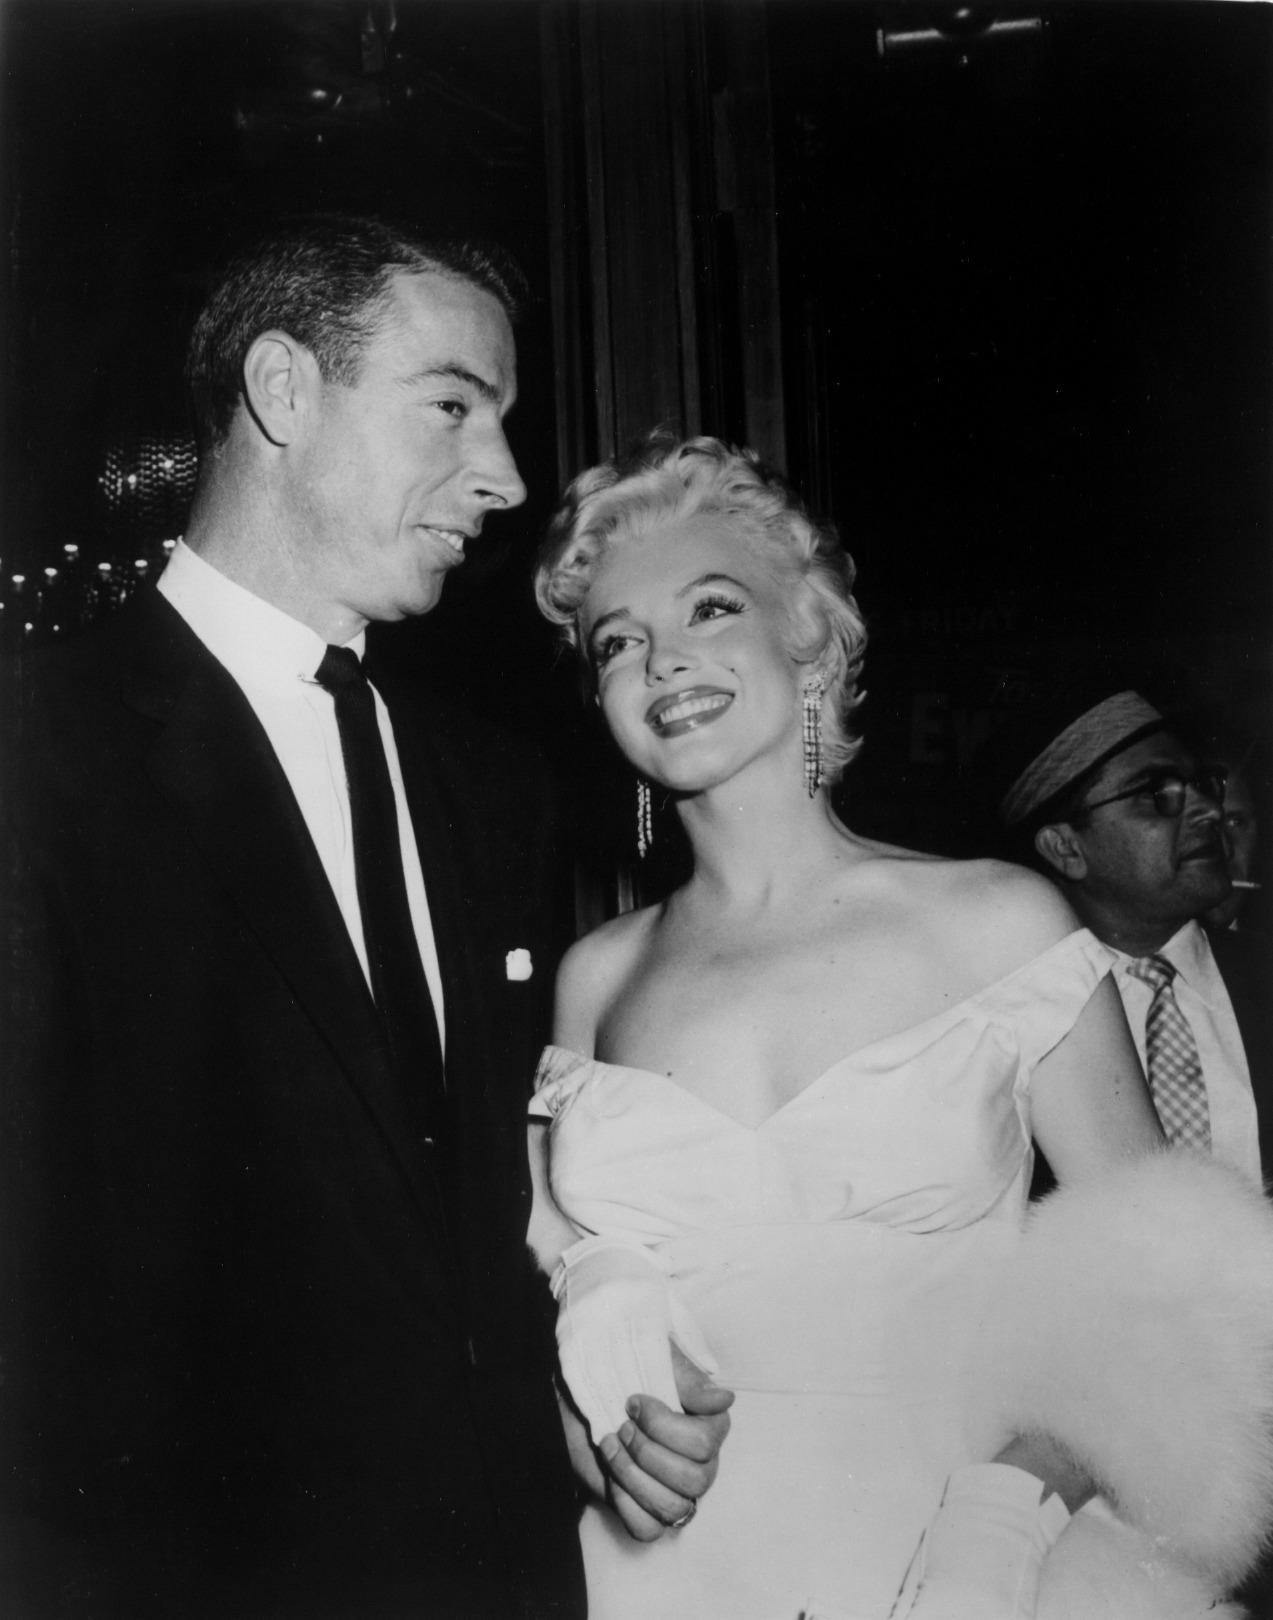 Güzellik İkonu: Marilyn Monroe